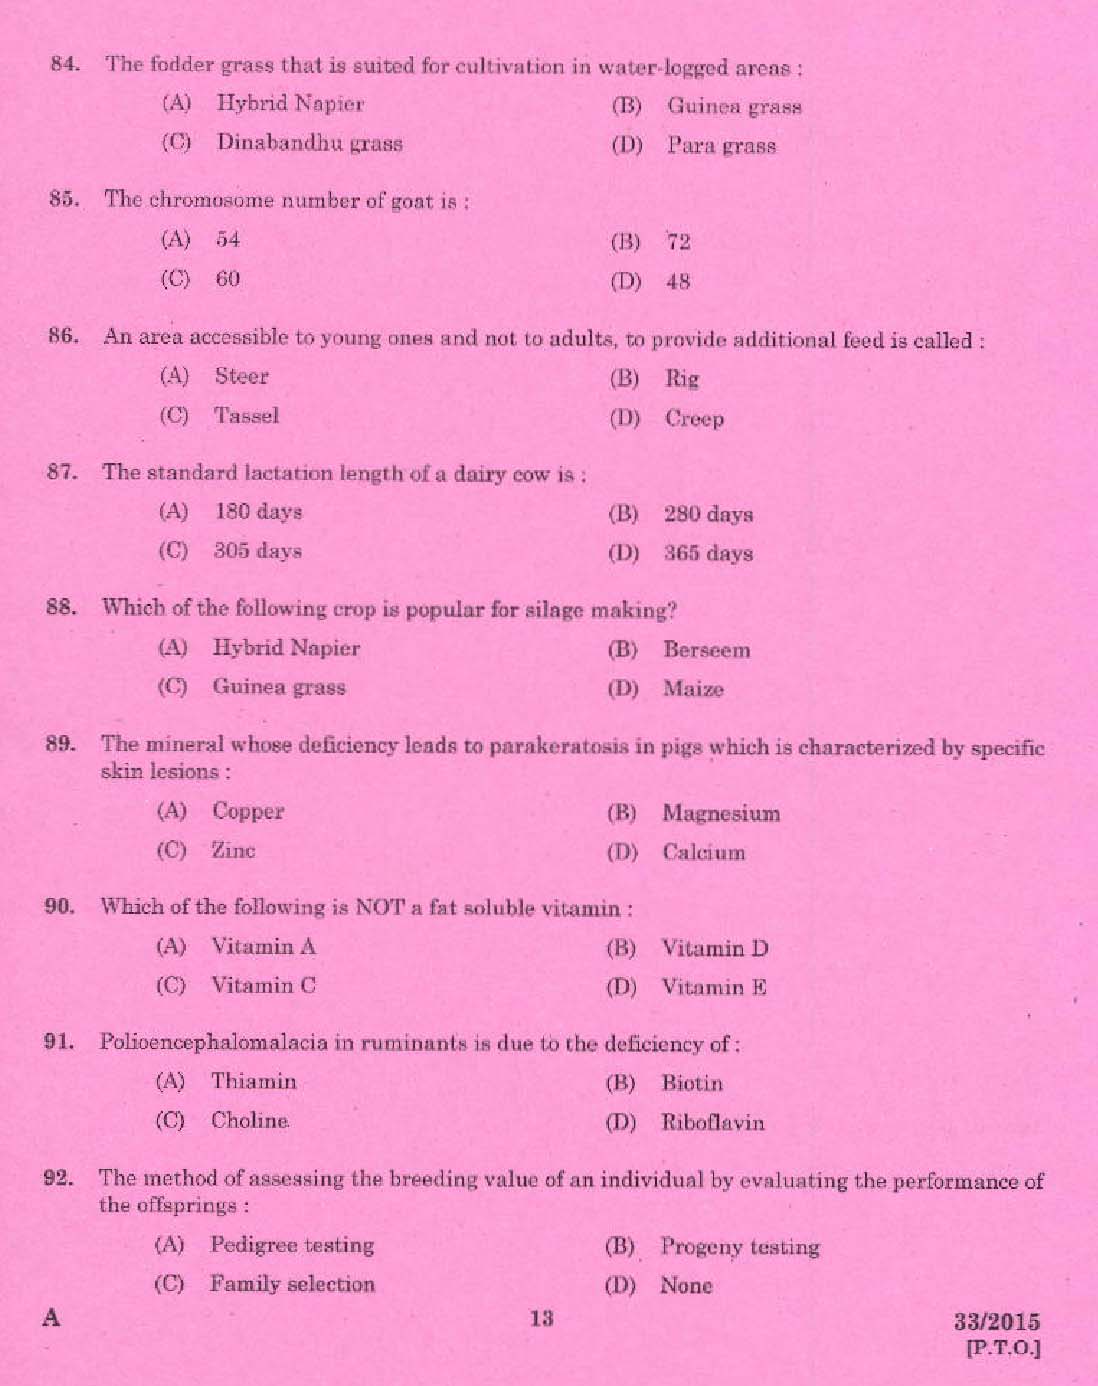 KPSC Livestock Inspector Grade II Exam 2015 Code 332015 11